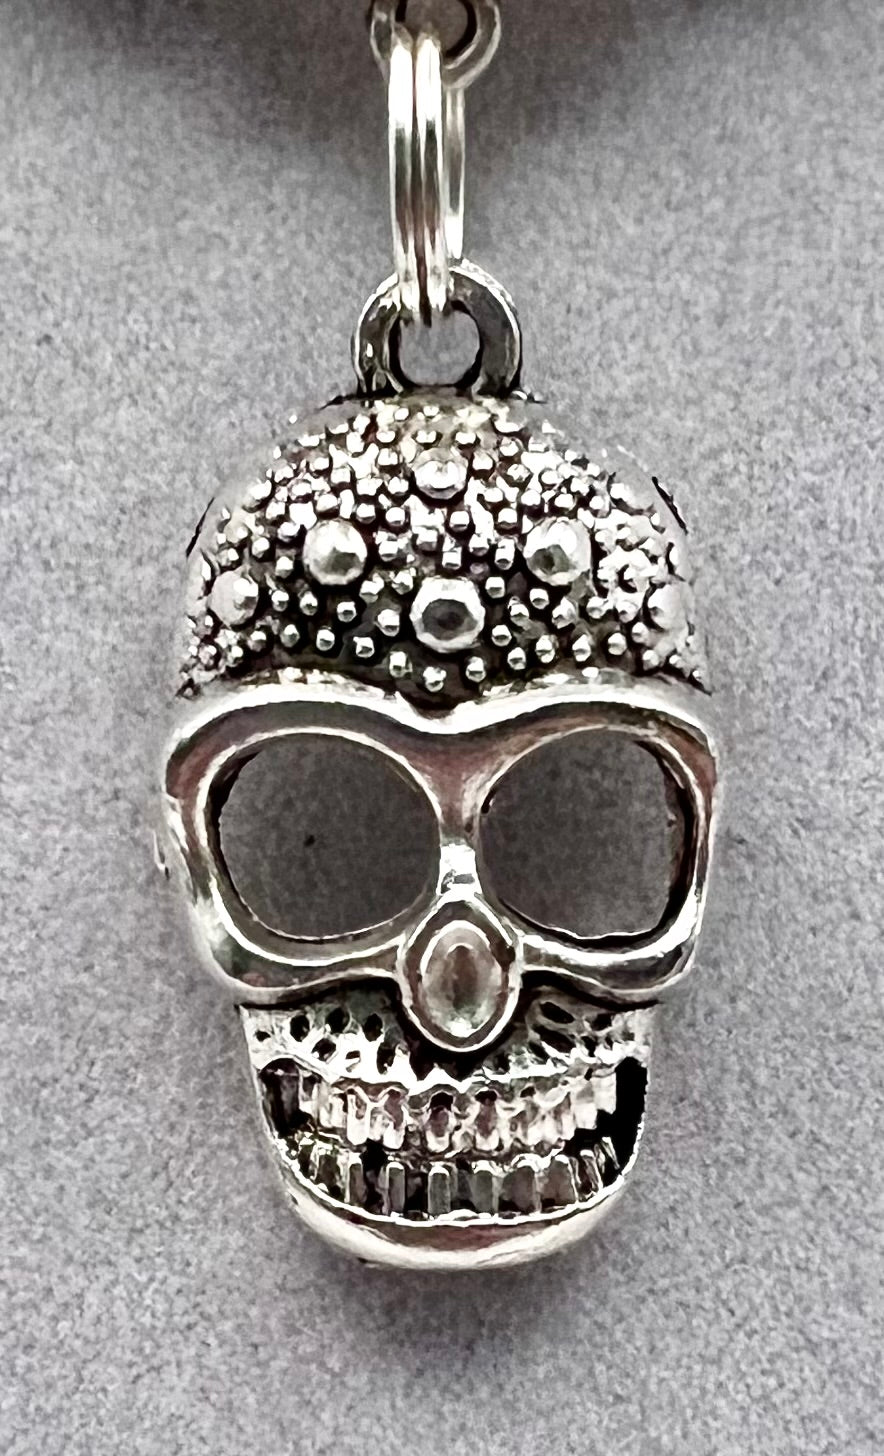 Necklace with Semi-Precious Beads & Catrin (Skull) / Multi-Color Quartz